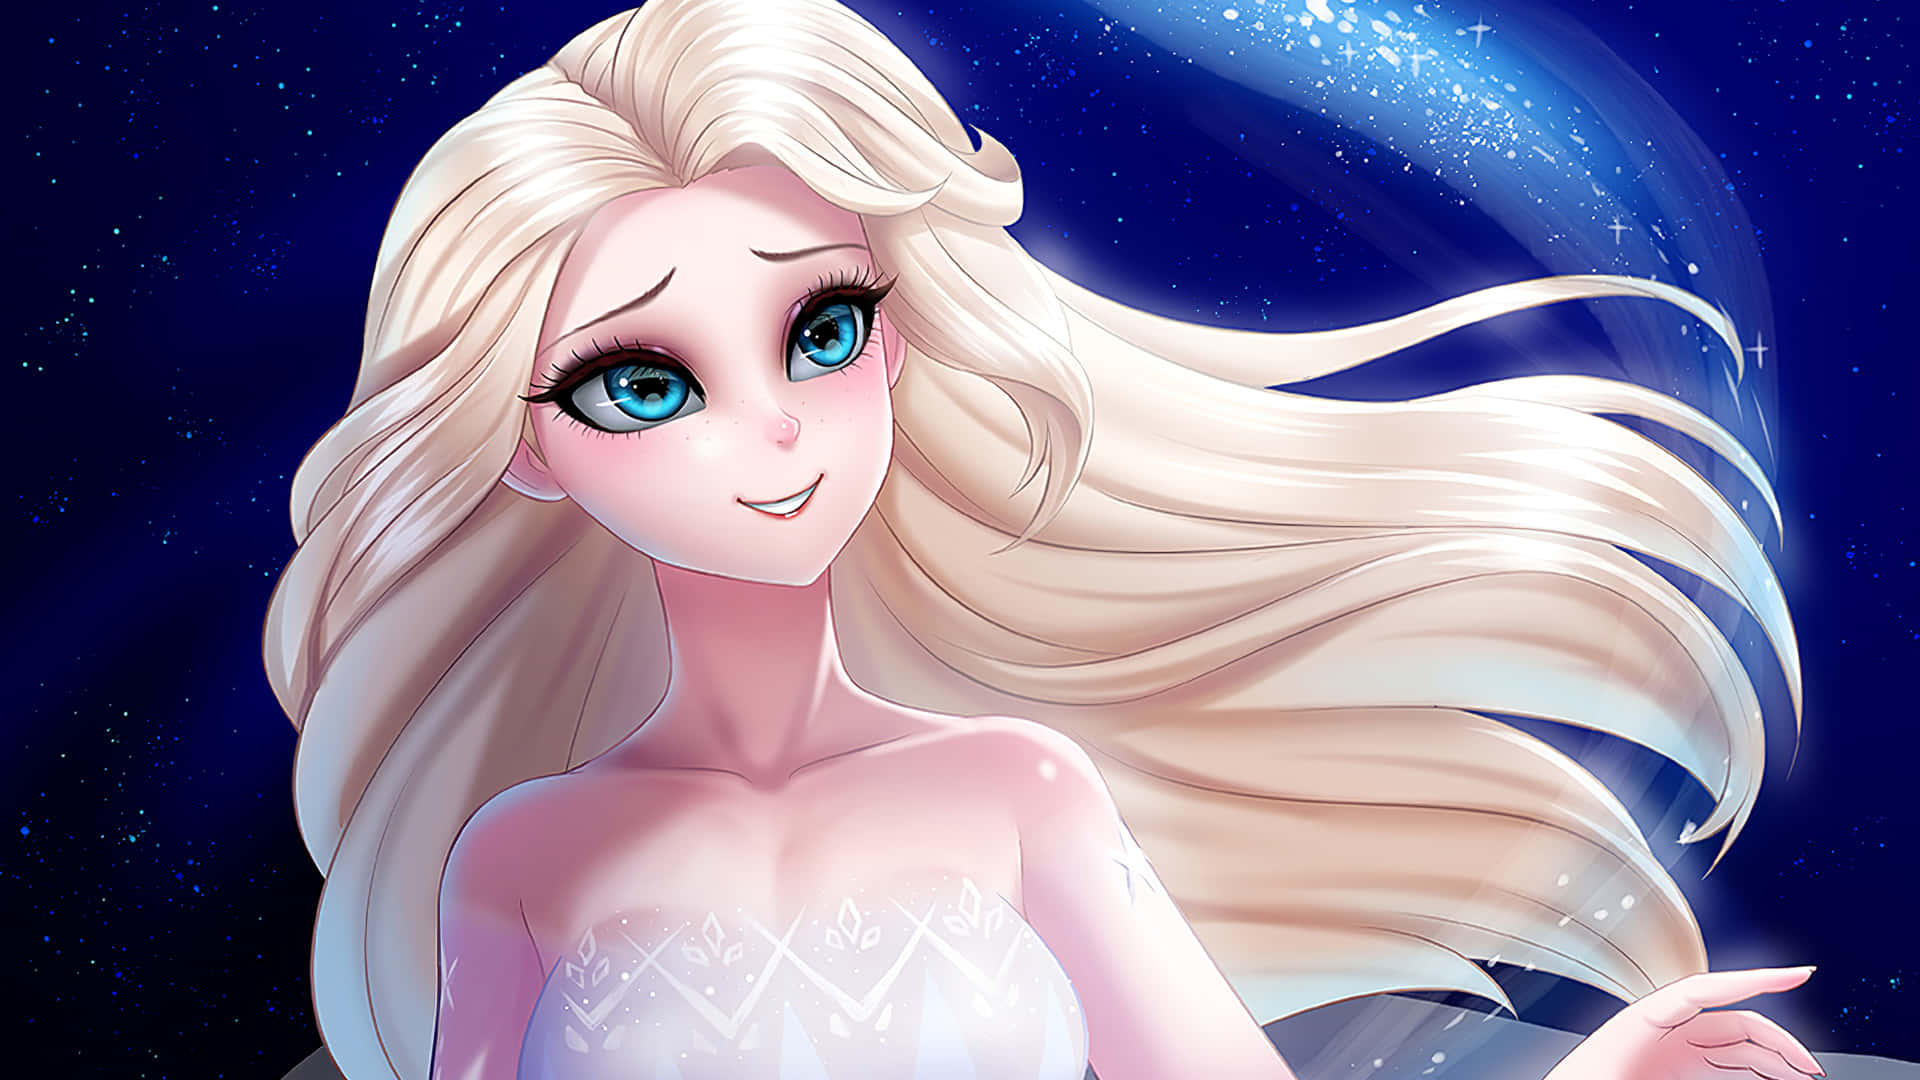 Annay Elsa Se Embarcan En Una Nueva Aventura En Frozen 2 De Disney.